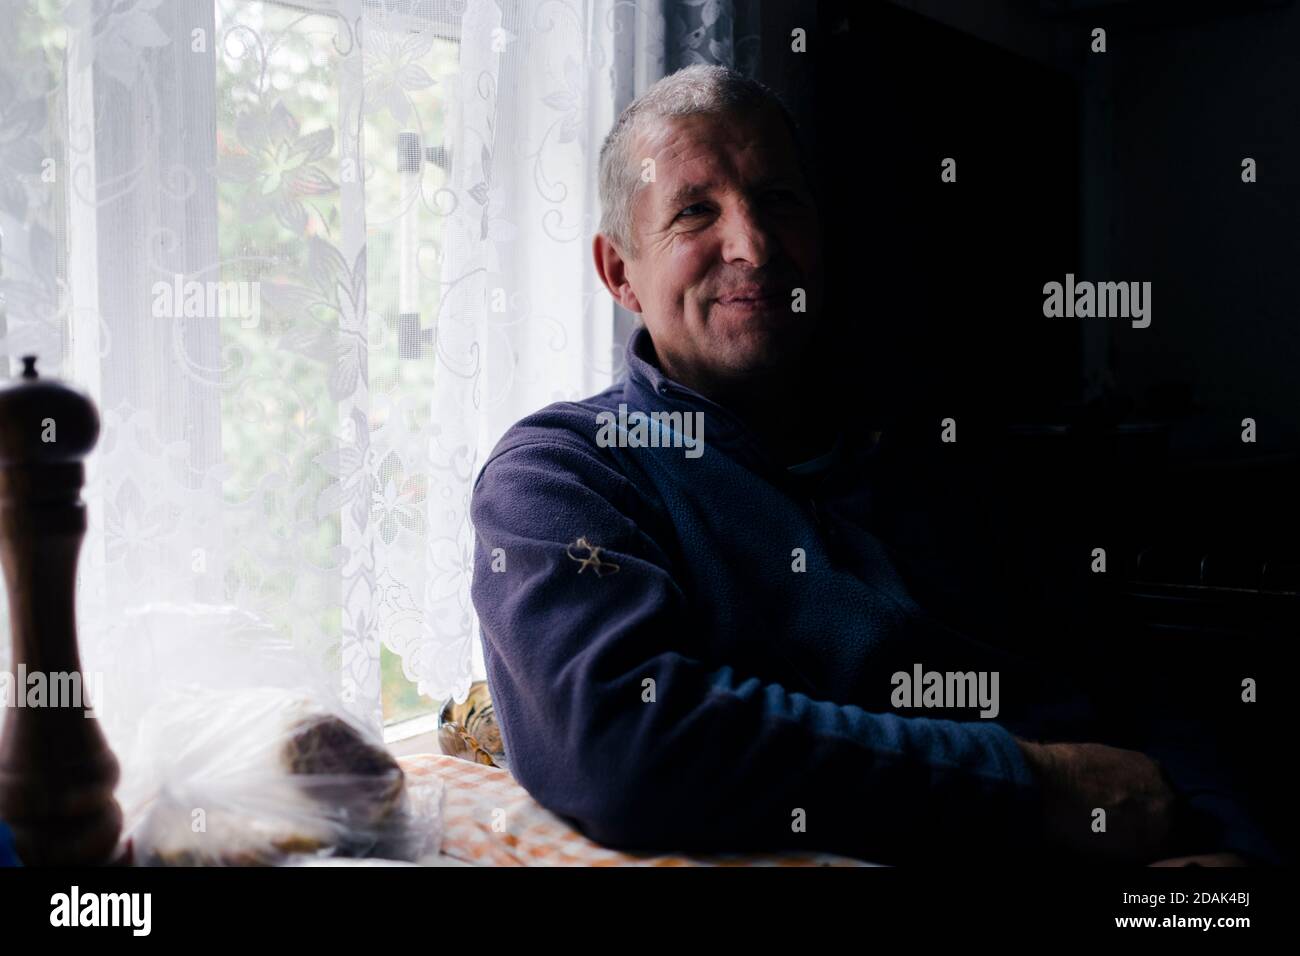 Ein Mann sitzt am Fenster; Schatten fällt auf die Hälfte seines Körpers und seines Gesichts. Stockfoto